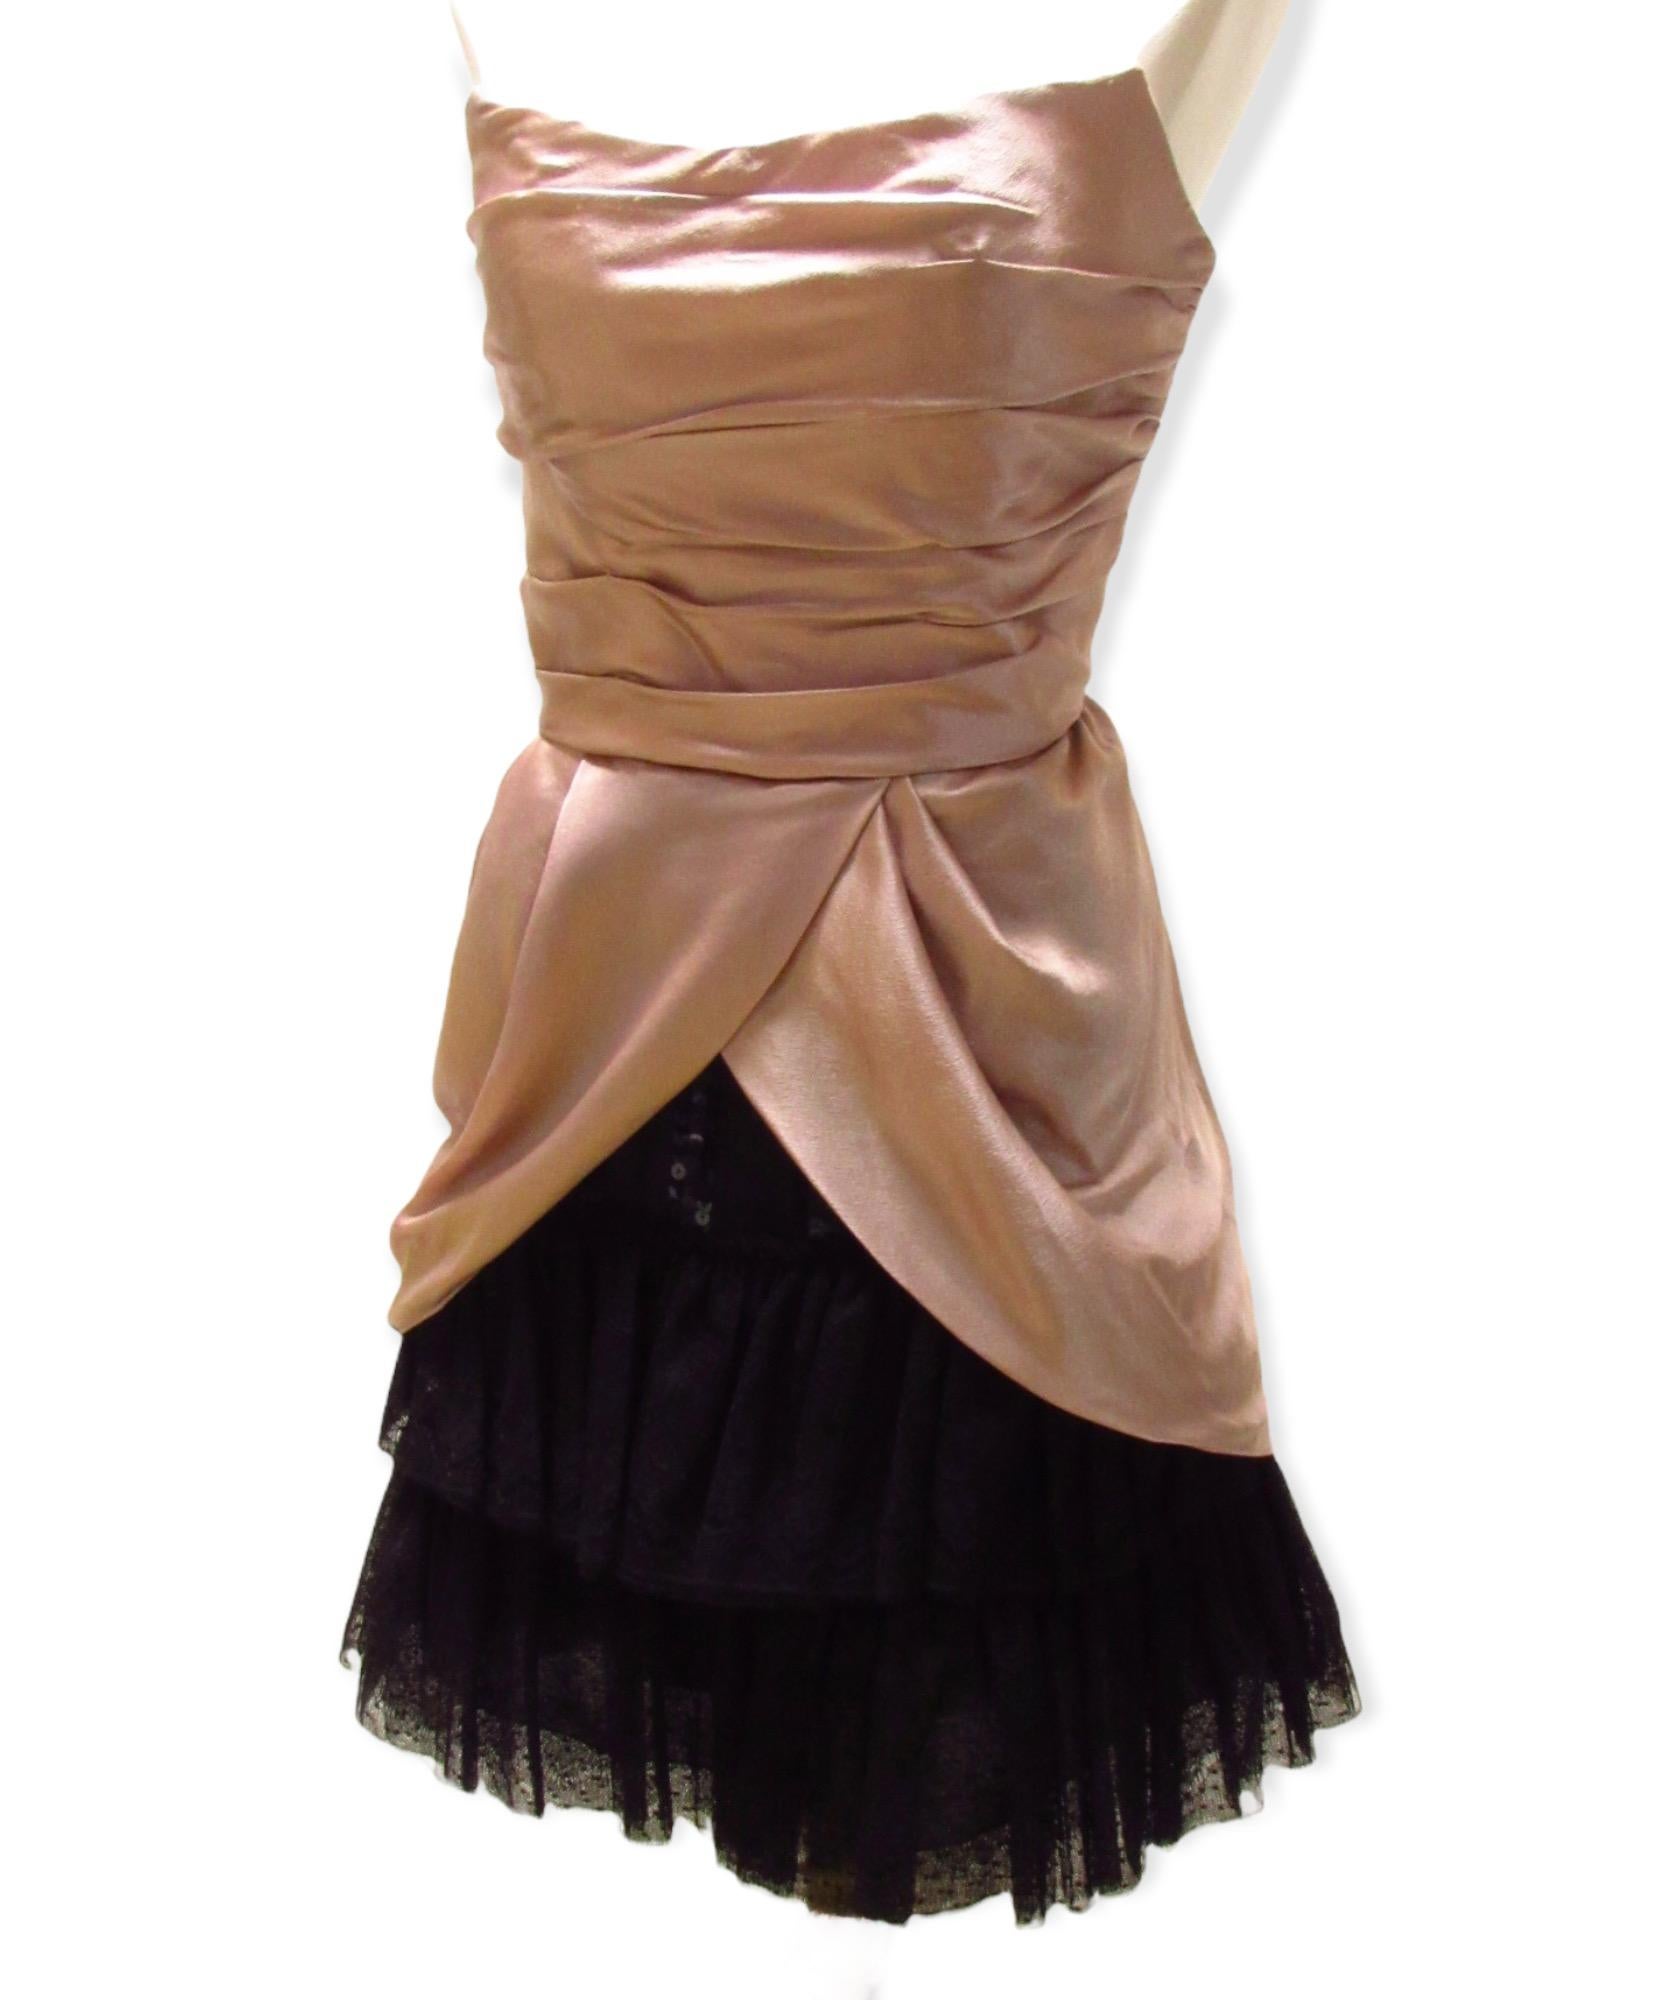 Ein atemberaubendes trägerloses Kleid von Alberta Ferretti aus butterweicher fliederfarbener Seide. Das Mieder ist in Falten gelegt und fällt in einen drapierten Rock, der mit schwarzem Spitzen-Tüll unterlegt ist. Es wird mit einem seitlichen